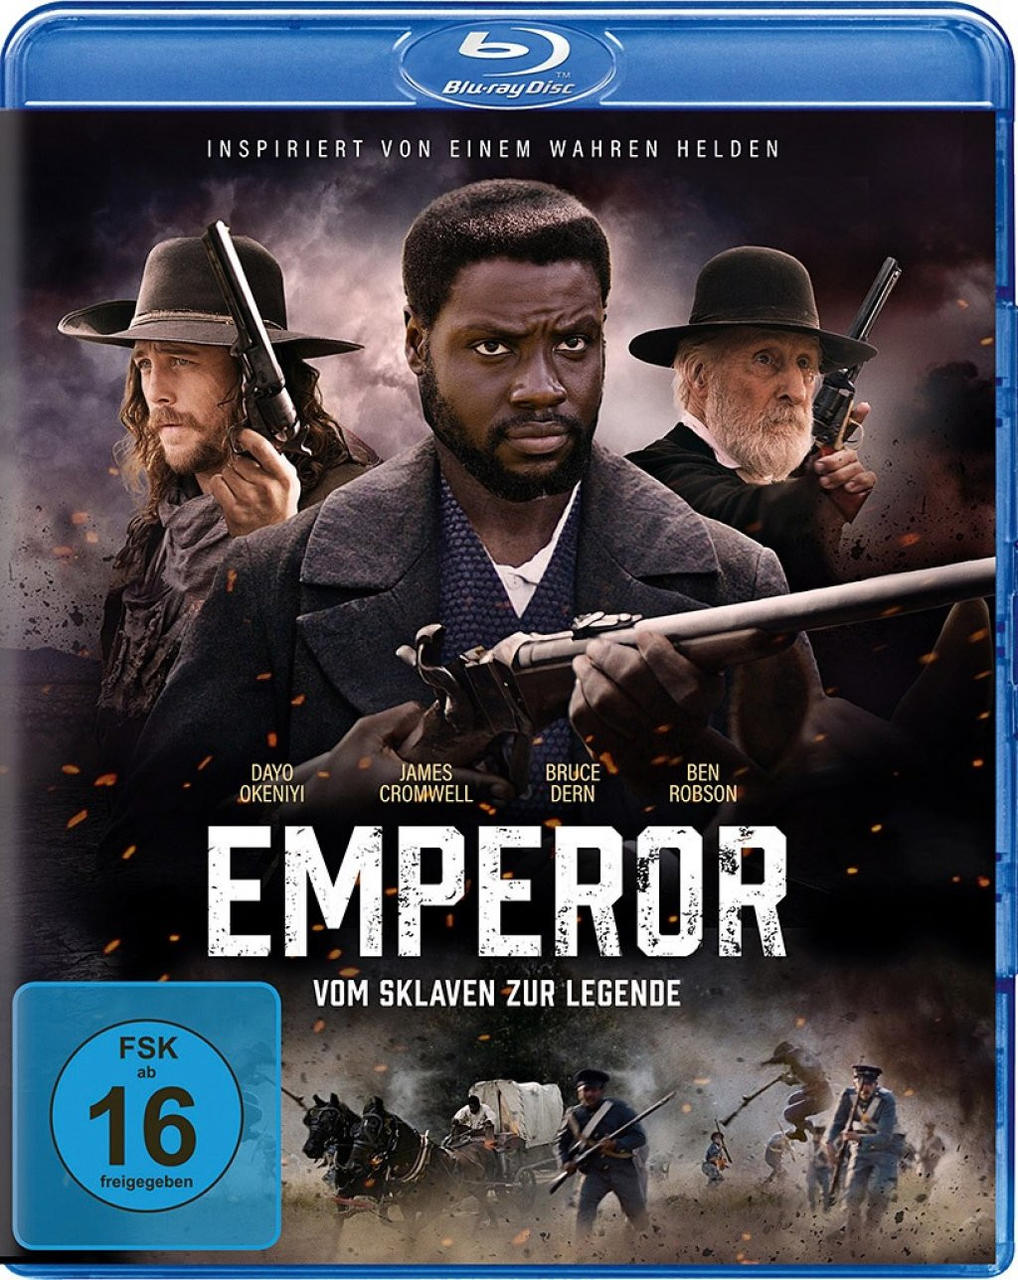 Emperor - Vom zur Sklaven Blu-ray Legende